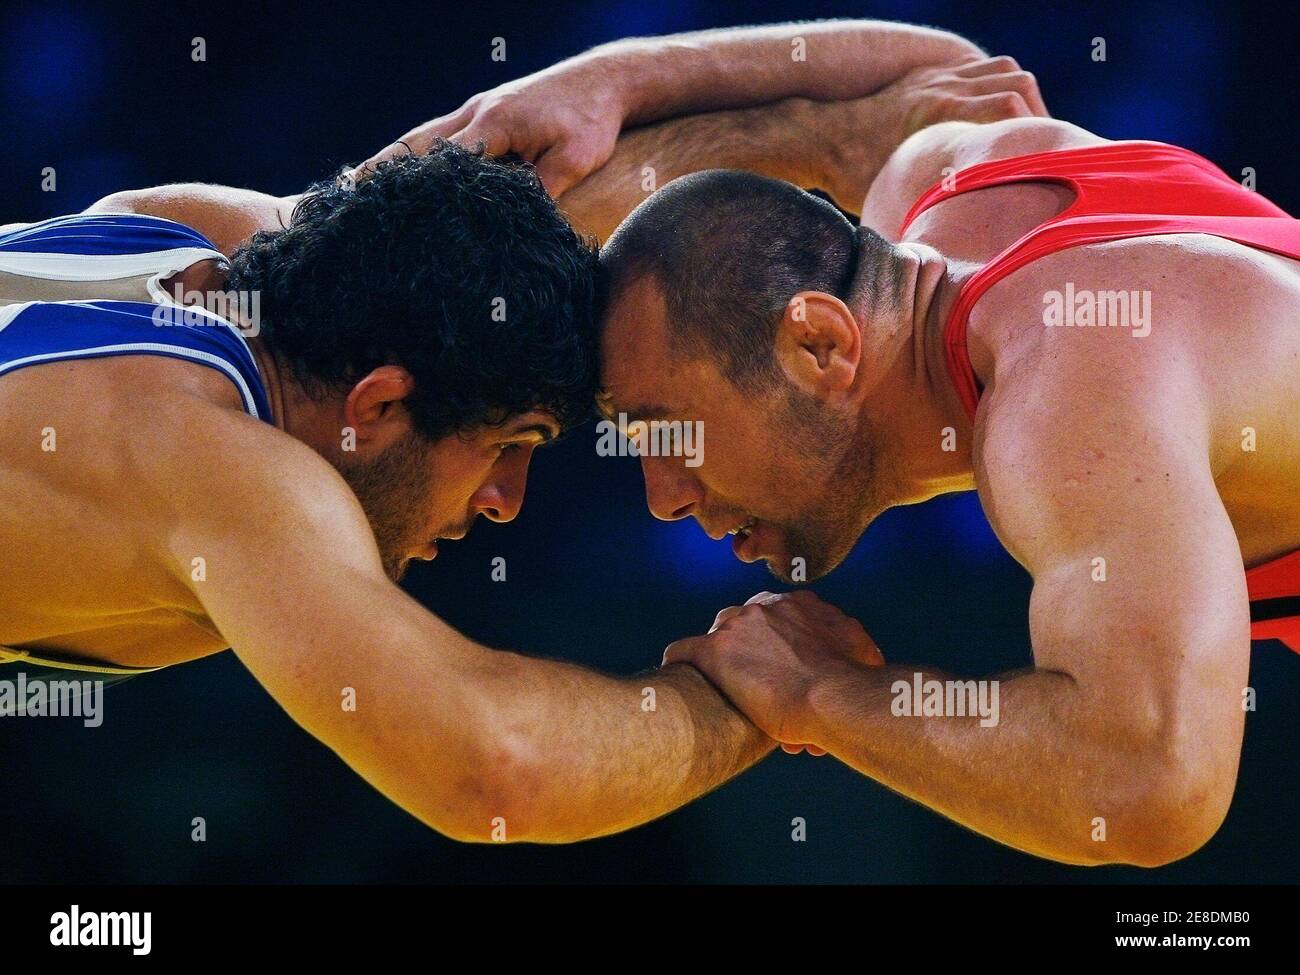 Annoncør Det melodrama Azerbaijan's Khetag Gazyumov (R) challenges Russia's Khadzhimurat Gatsalov  in the men's 96 kg free-style gold medal match at the World Wrestling  Championships 2009 in Herning September 21, 2009. REUTERS/Bob Strong  (DENMARK SPORT